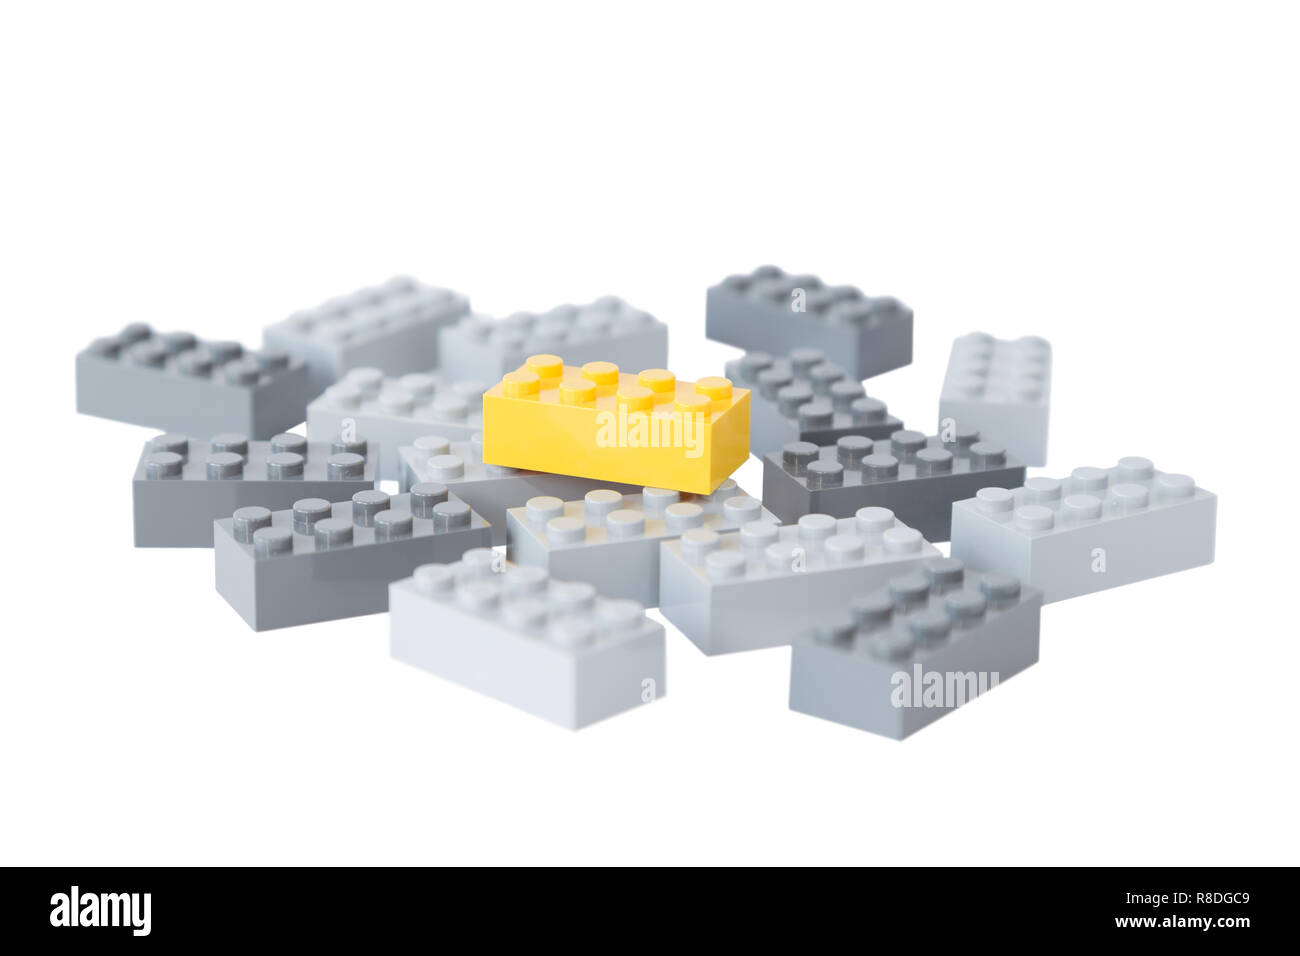 Tas de briques de construction jouet gris et un jaune lumineux au-dessus d'eux. Concept photo de se démarquer de la foule ou gris de masses. Isolé sur blanc. Banque D'Images